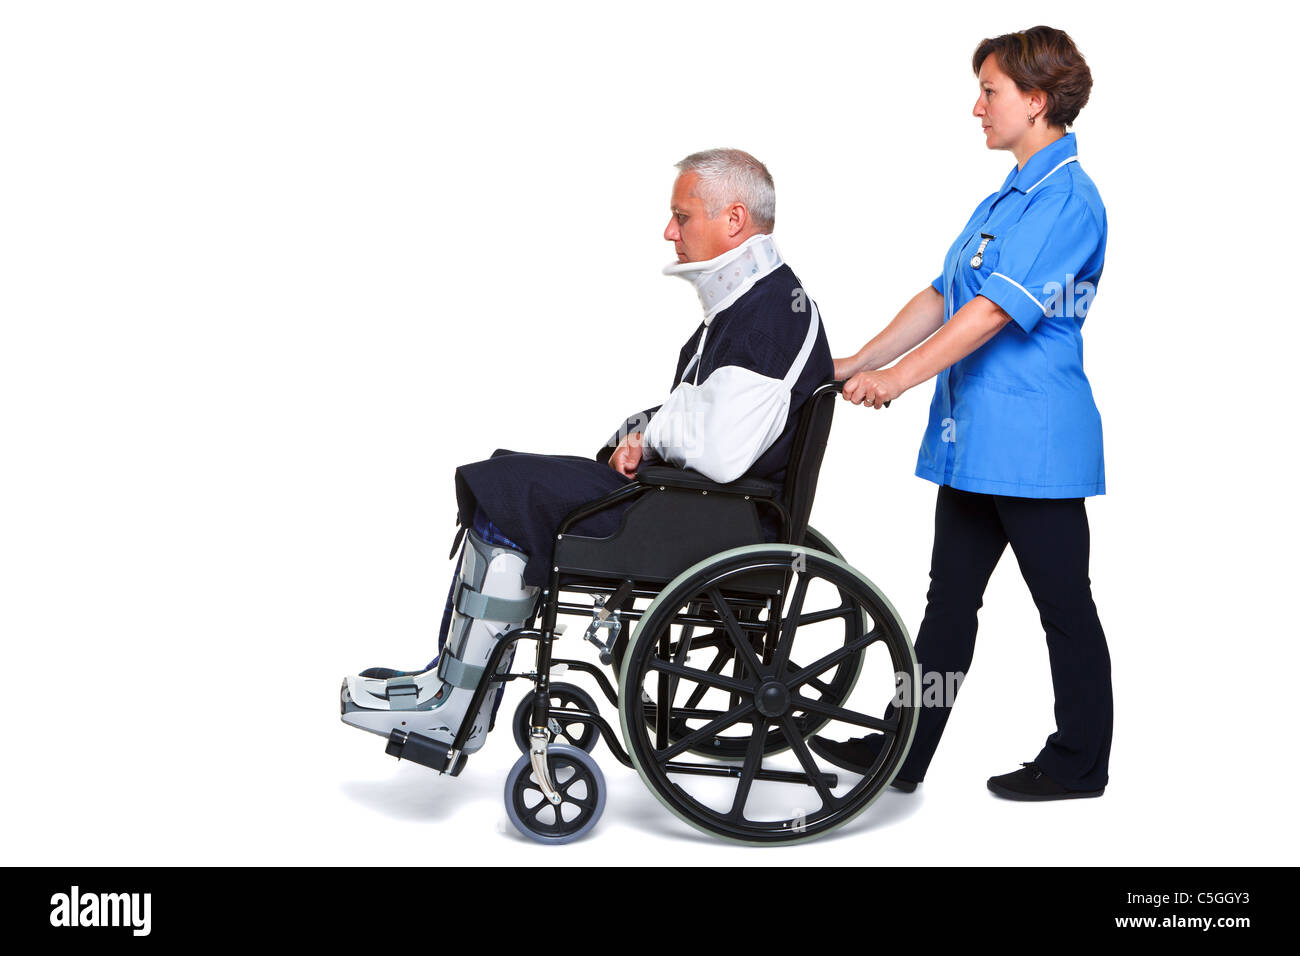 Photo d'un homme blessé dans un fauteuil roulant avec une infirmière le pousser, isolé sur un fond blanc. Banque D'Images